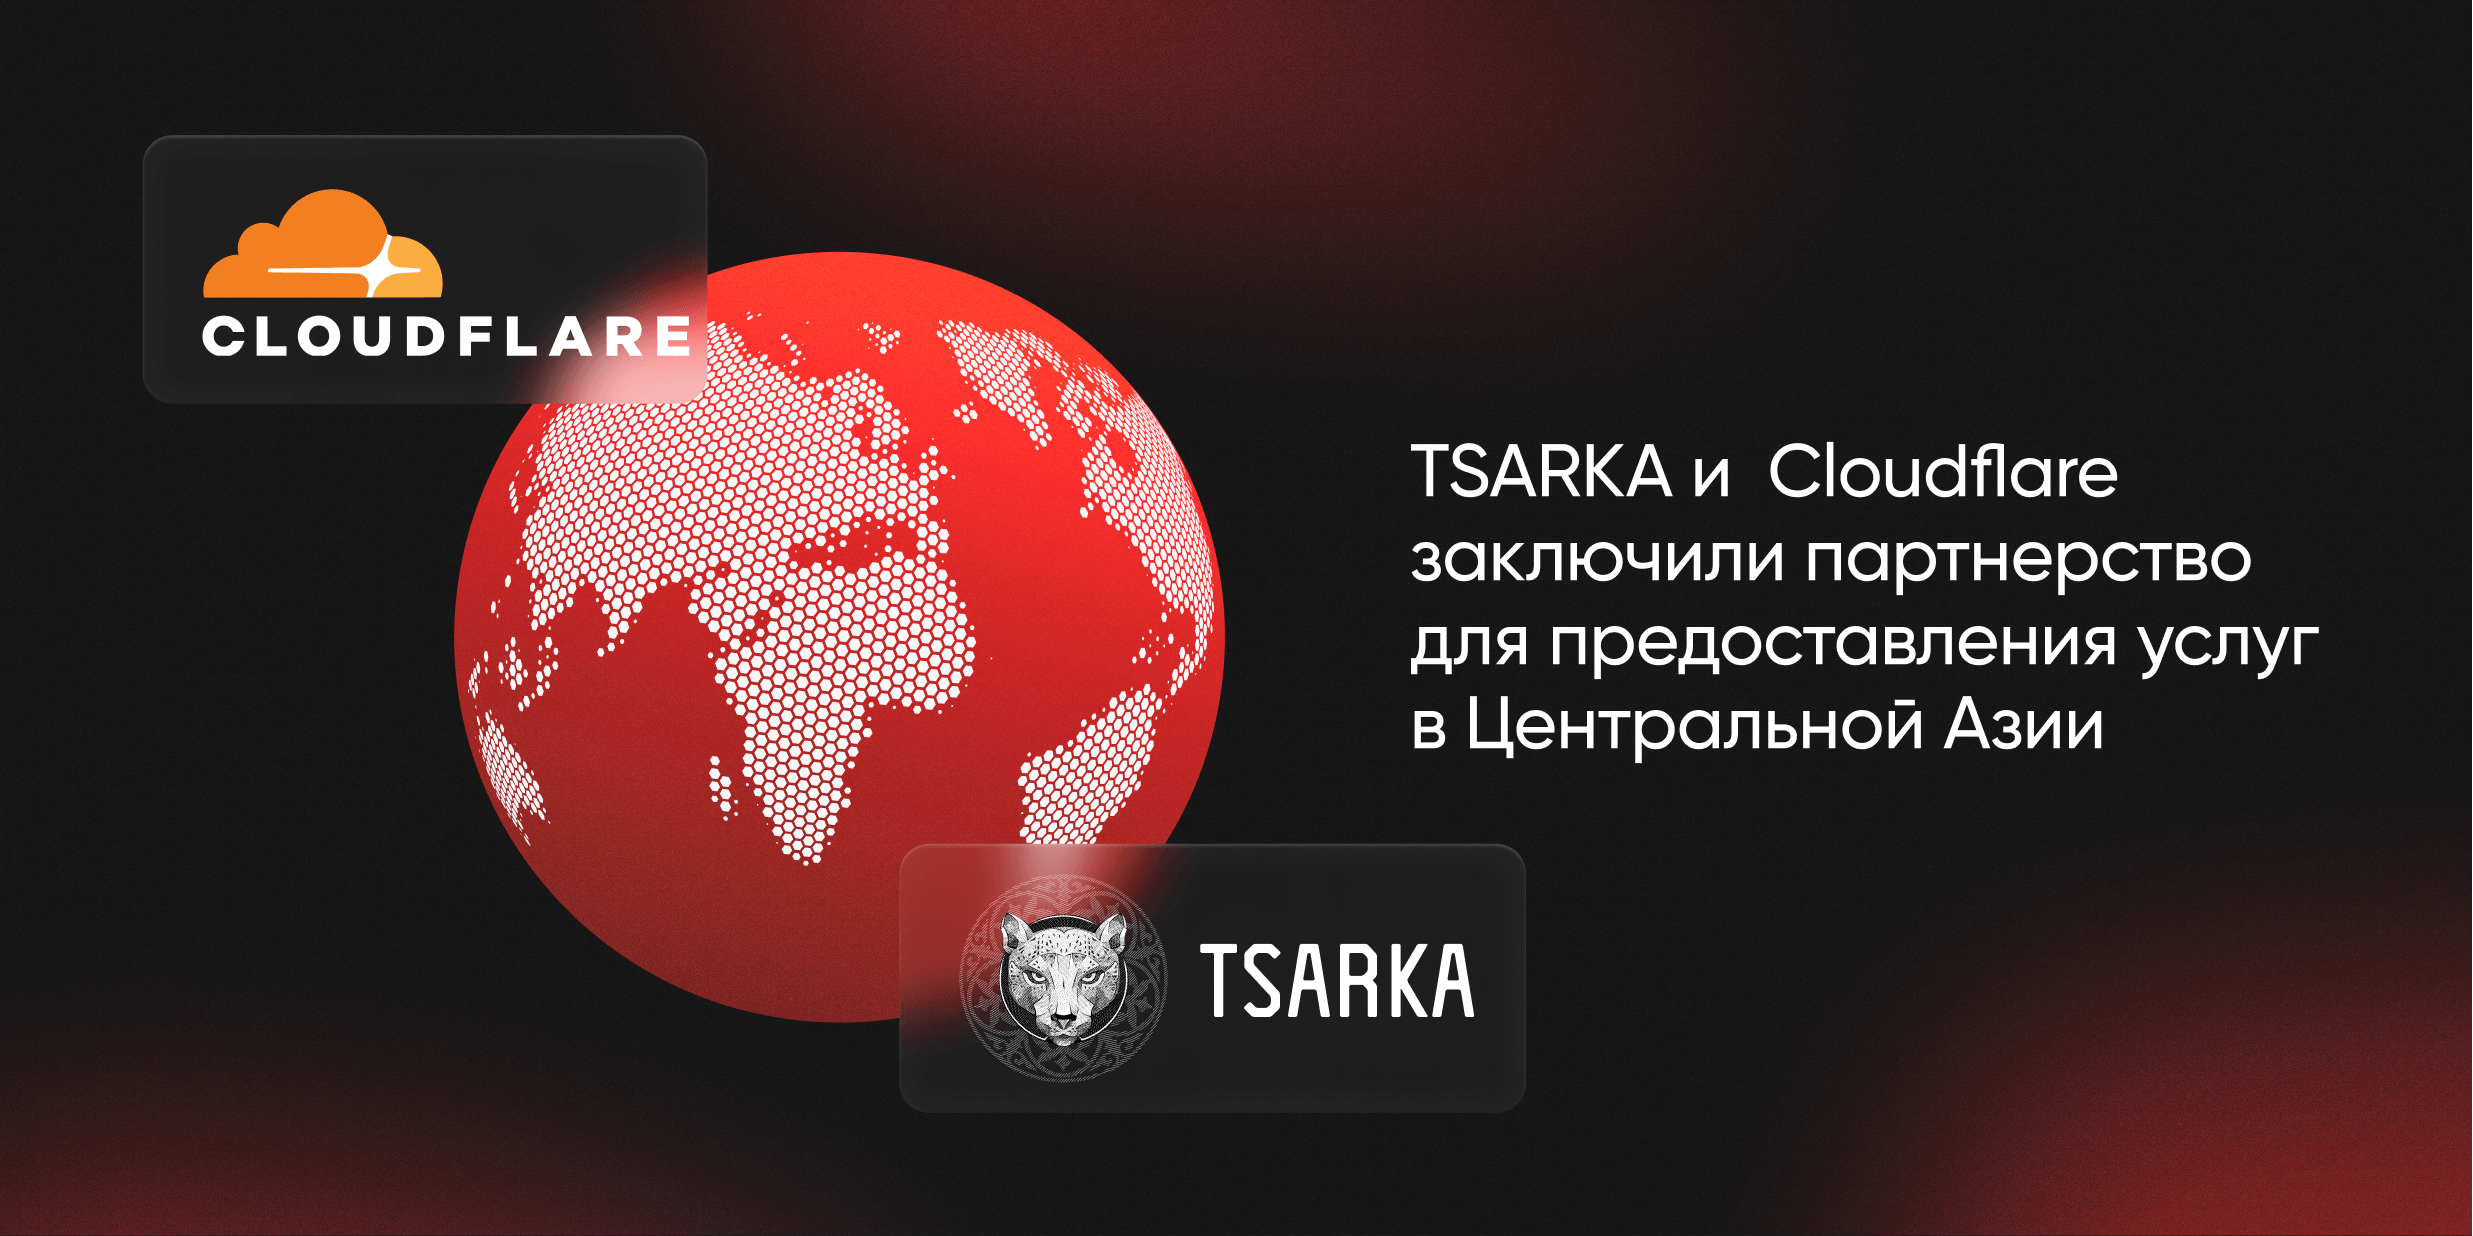 TSARKA и Cloudflare заключили партнерство для предоставления услуг в Центральной Азии